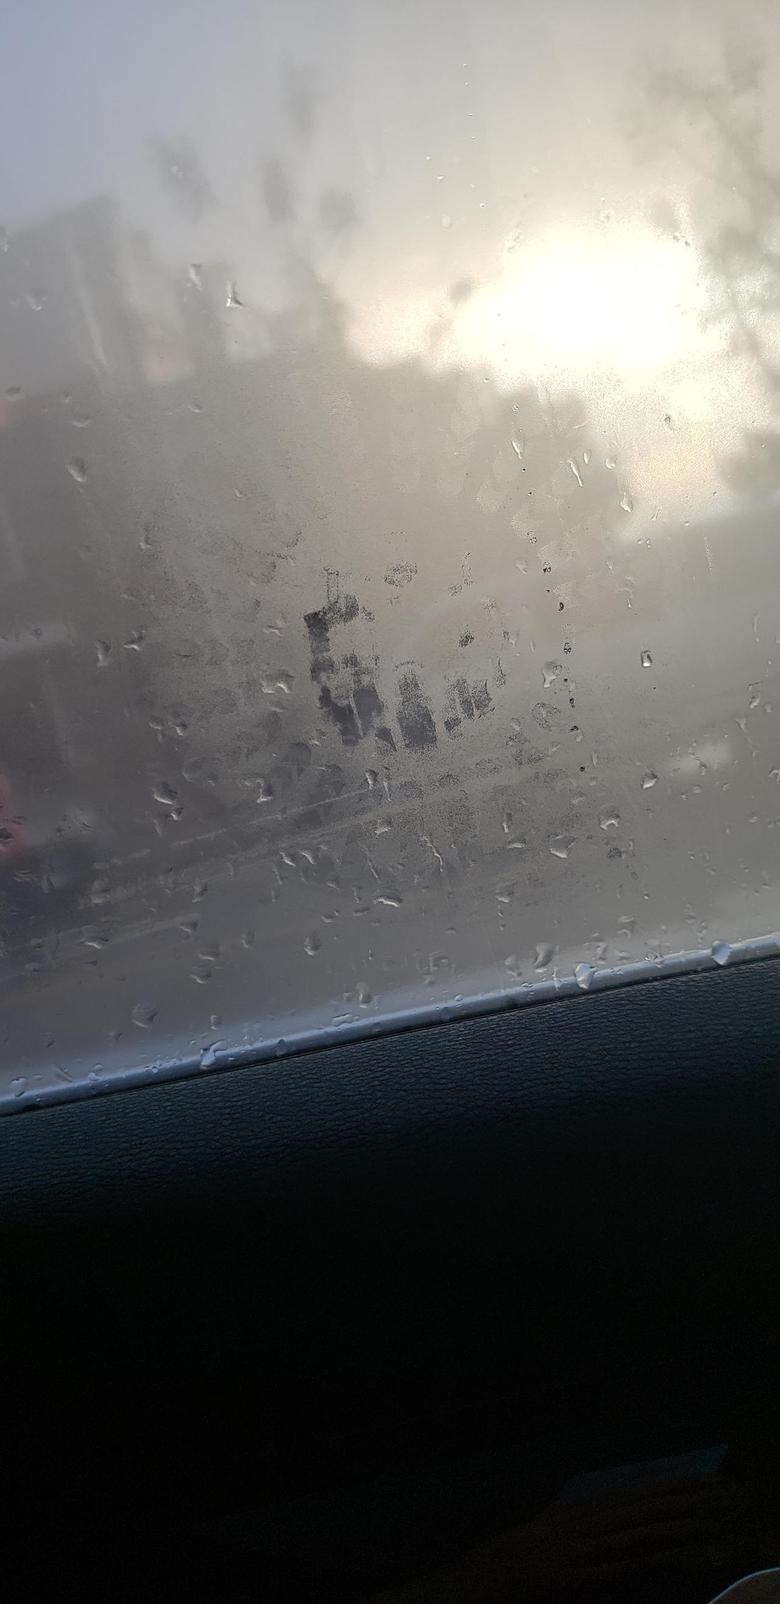 宝马x1 今天下雨时发现车玻璃上有个奇怪的图案，后排两个玻璃上都有。车是月初刚提的X1。